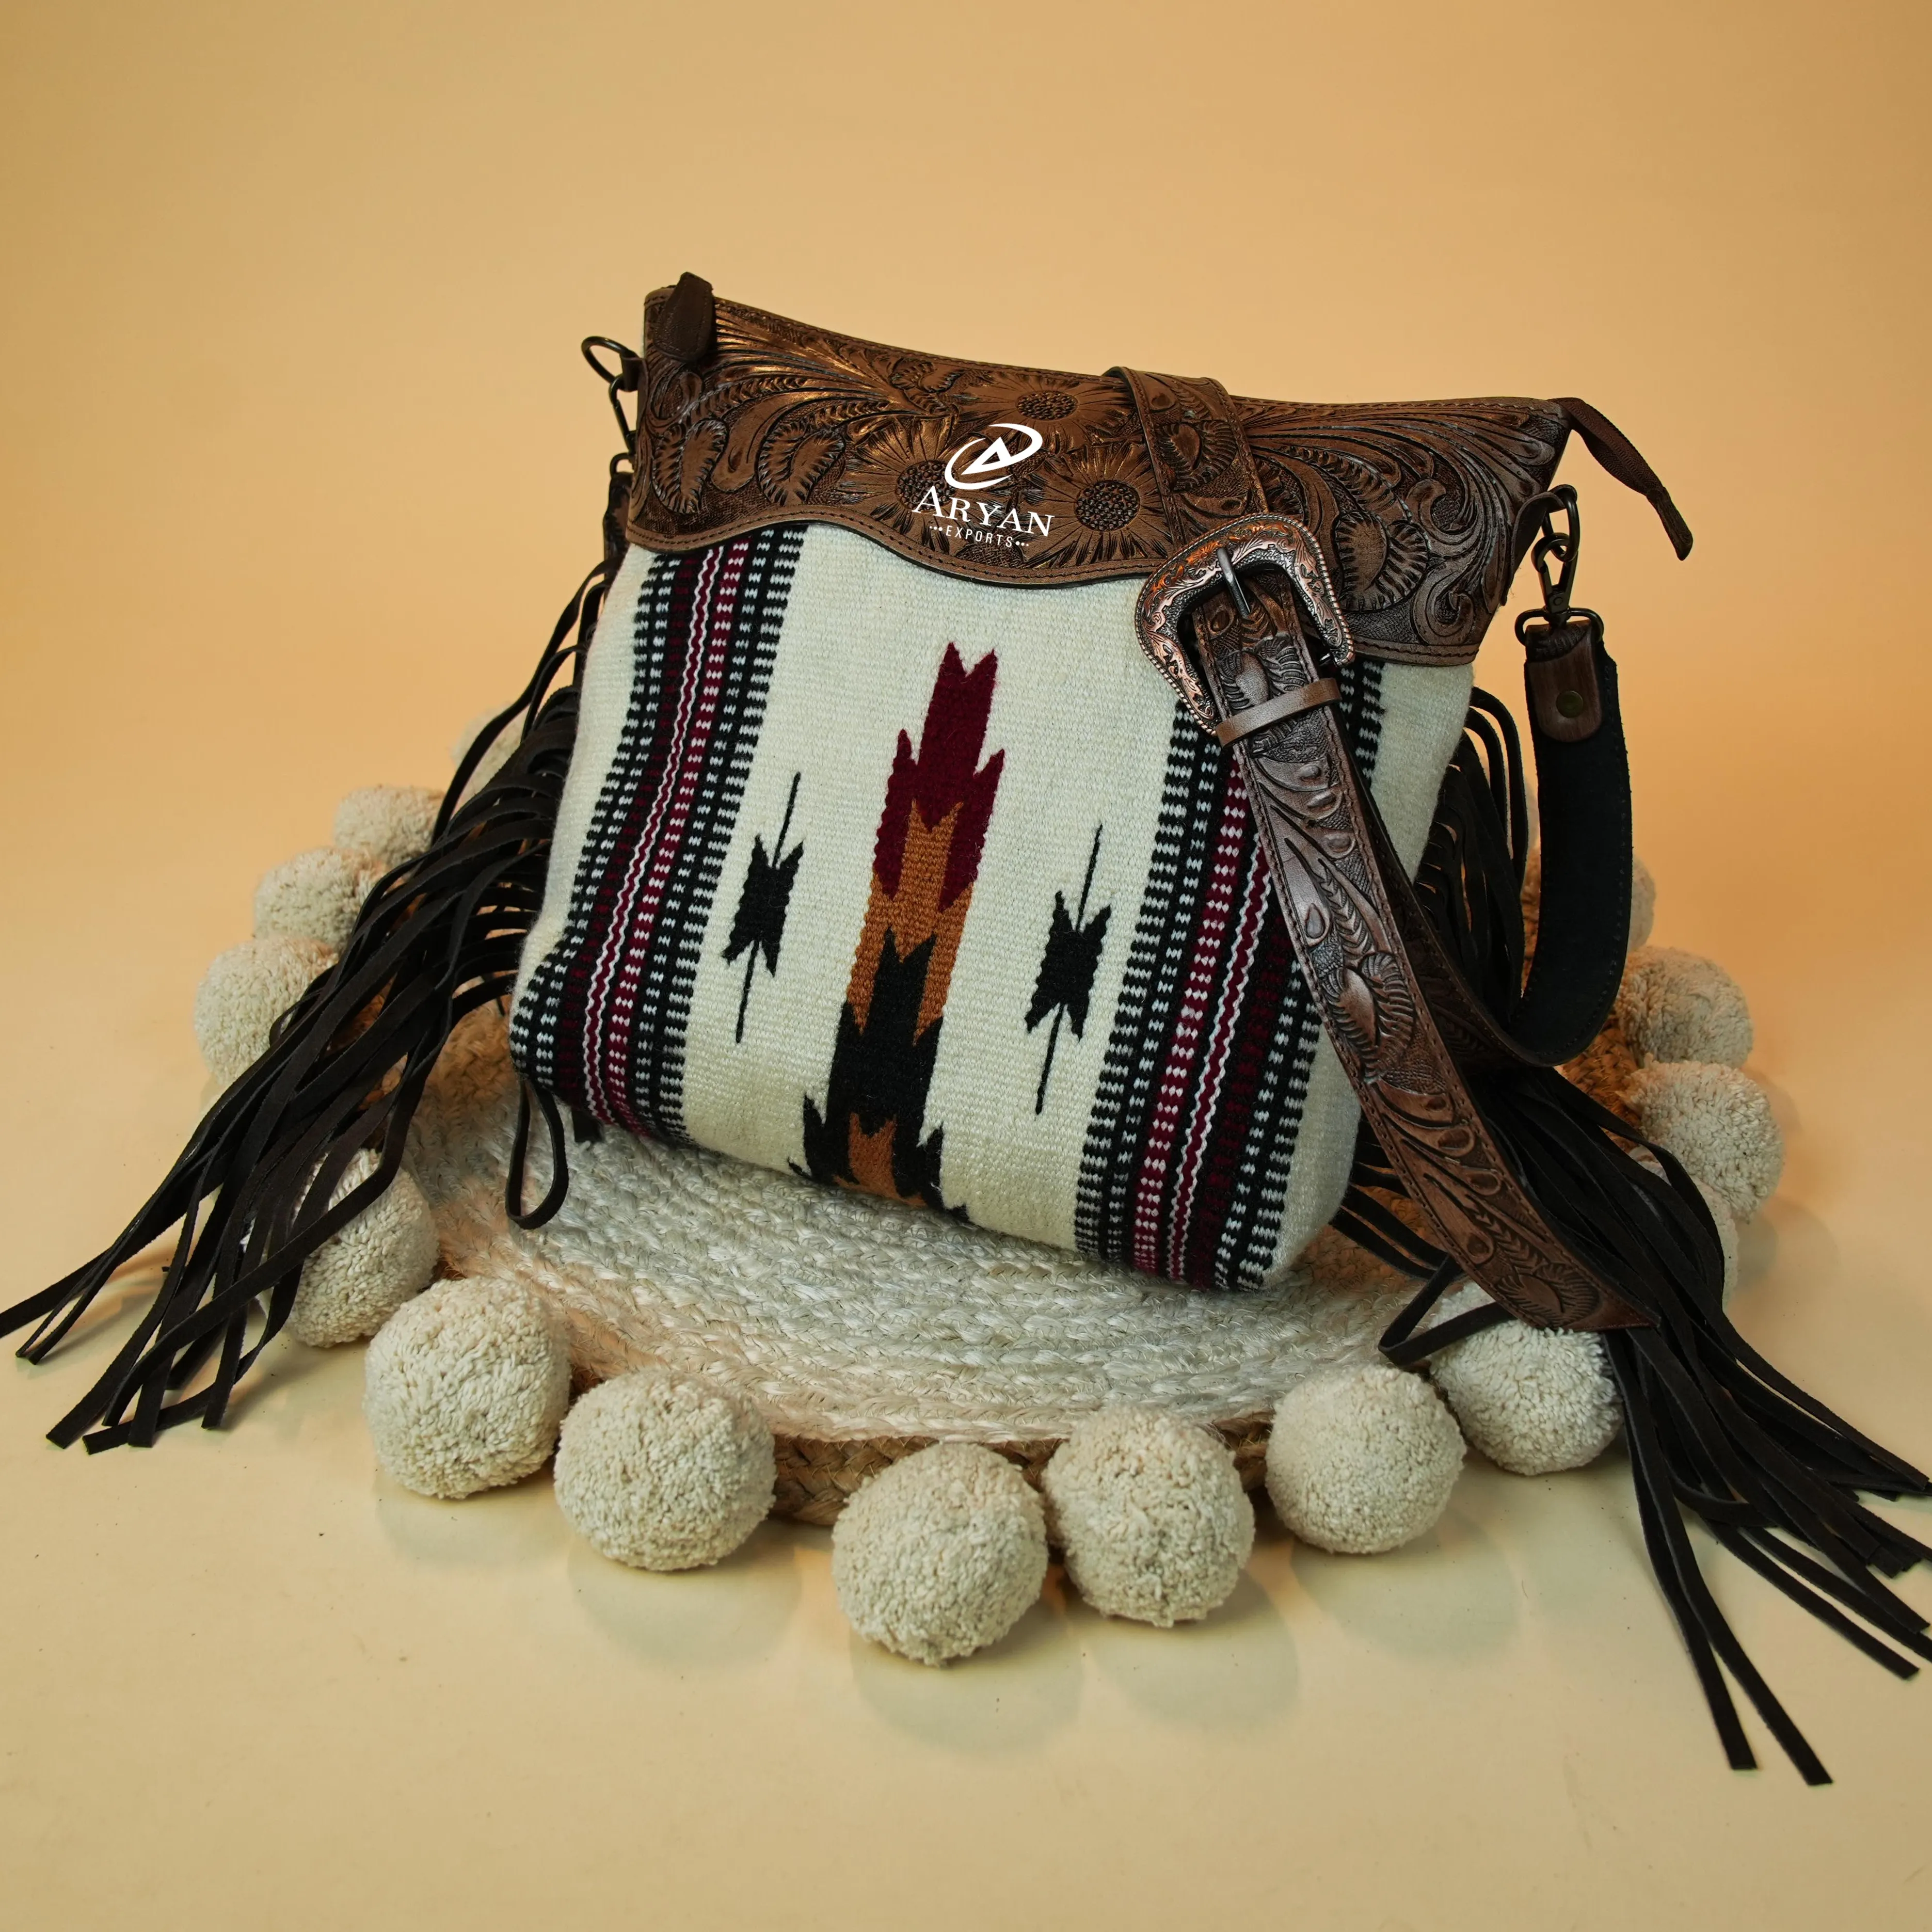 Manta con alforjas estilo occidental, bolso de mano con correa de cuero, bolsa de cabestrillo azteca de alta calidad, bolsa de Manta multicolor Vintage, nuevo